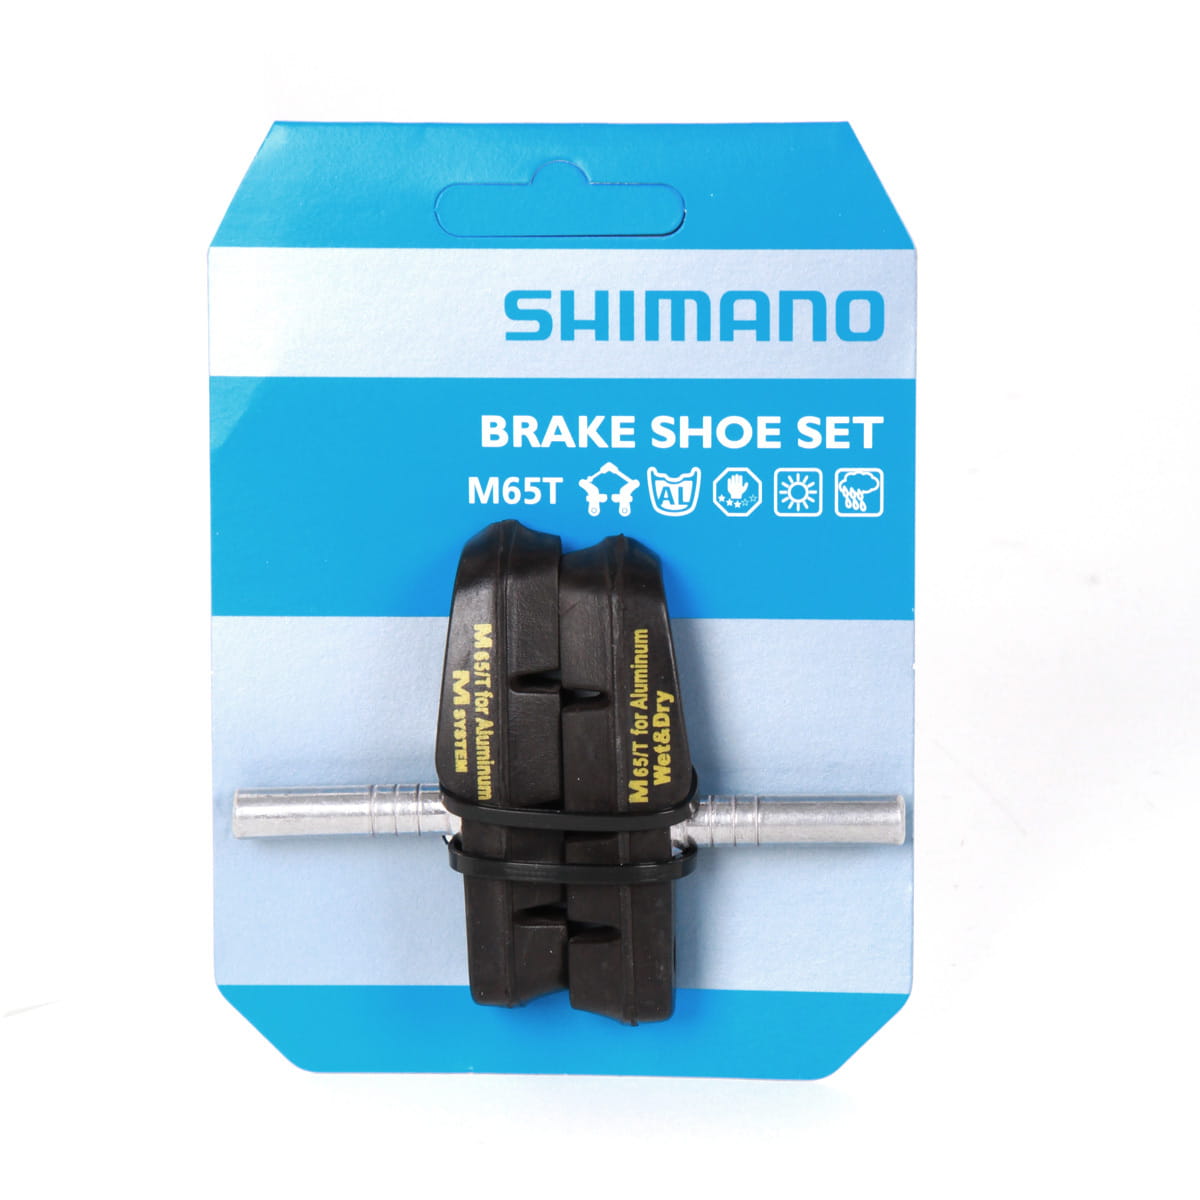 shimano brake shoe set